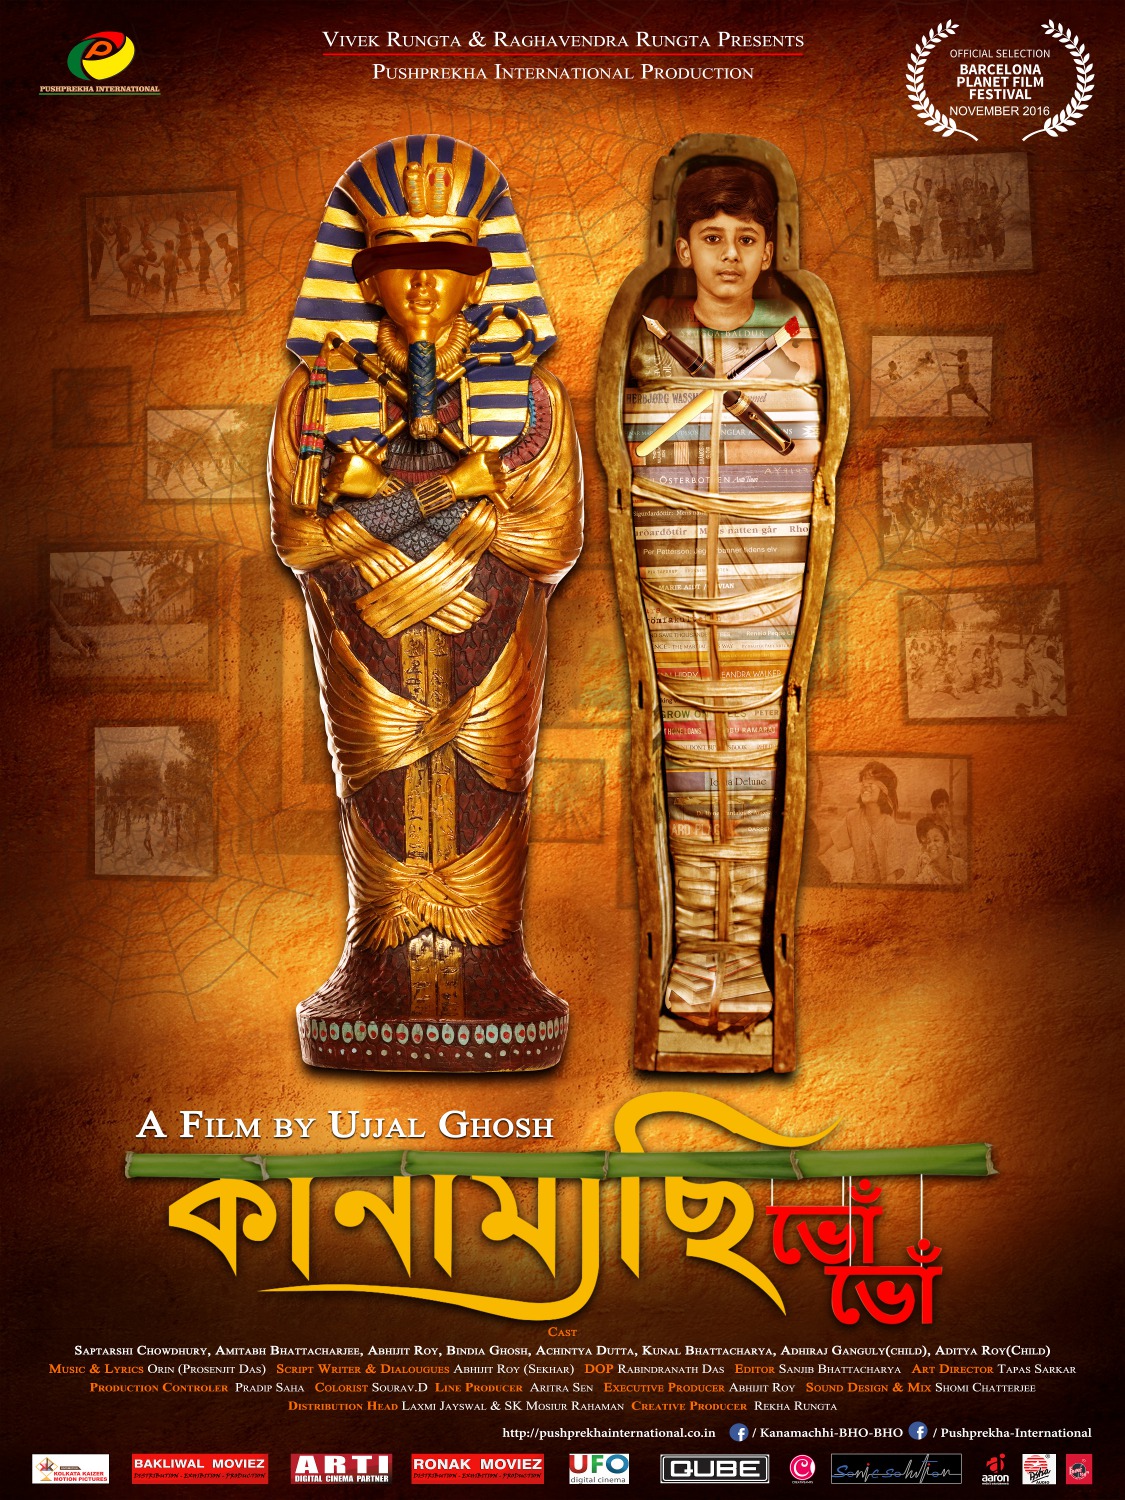 Extra Large Movie Poster Image for Kanamachhi Bho Bho (#2 of 2)